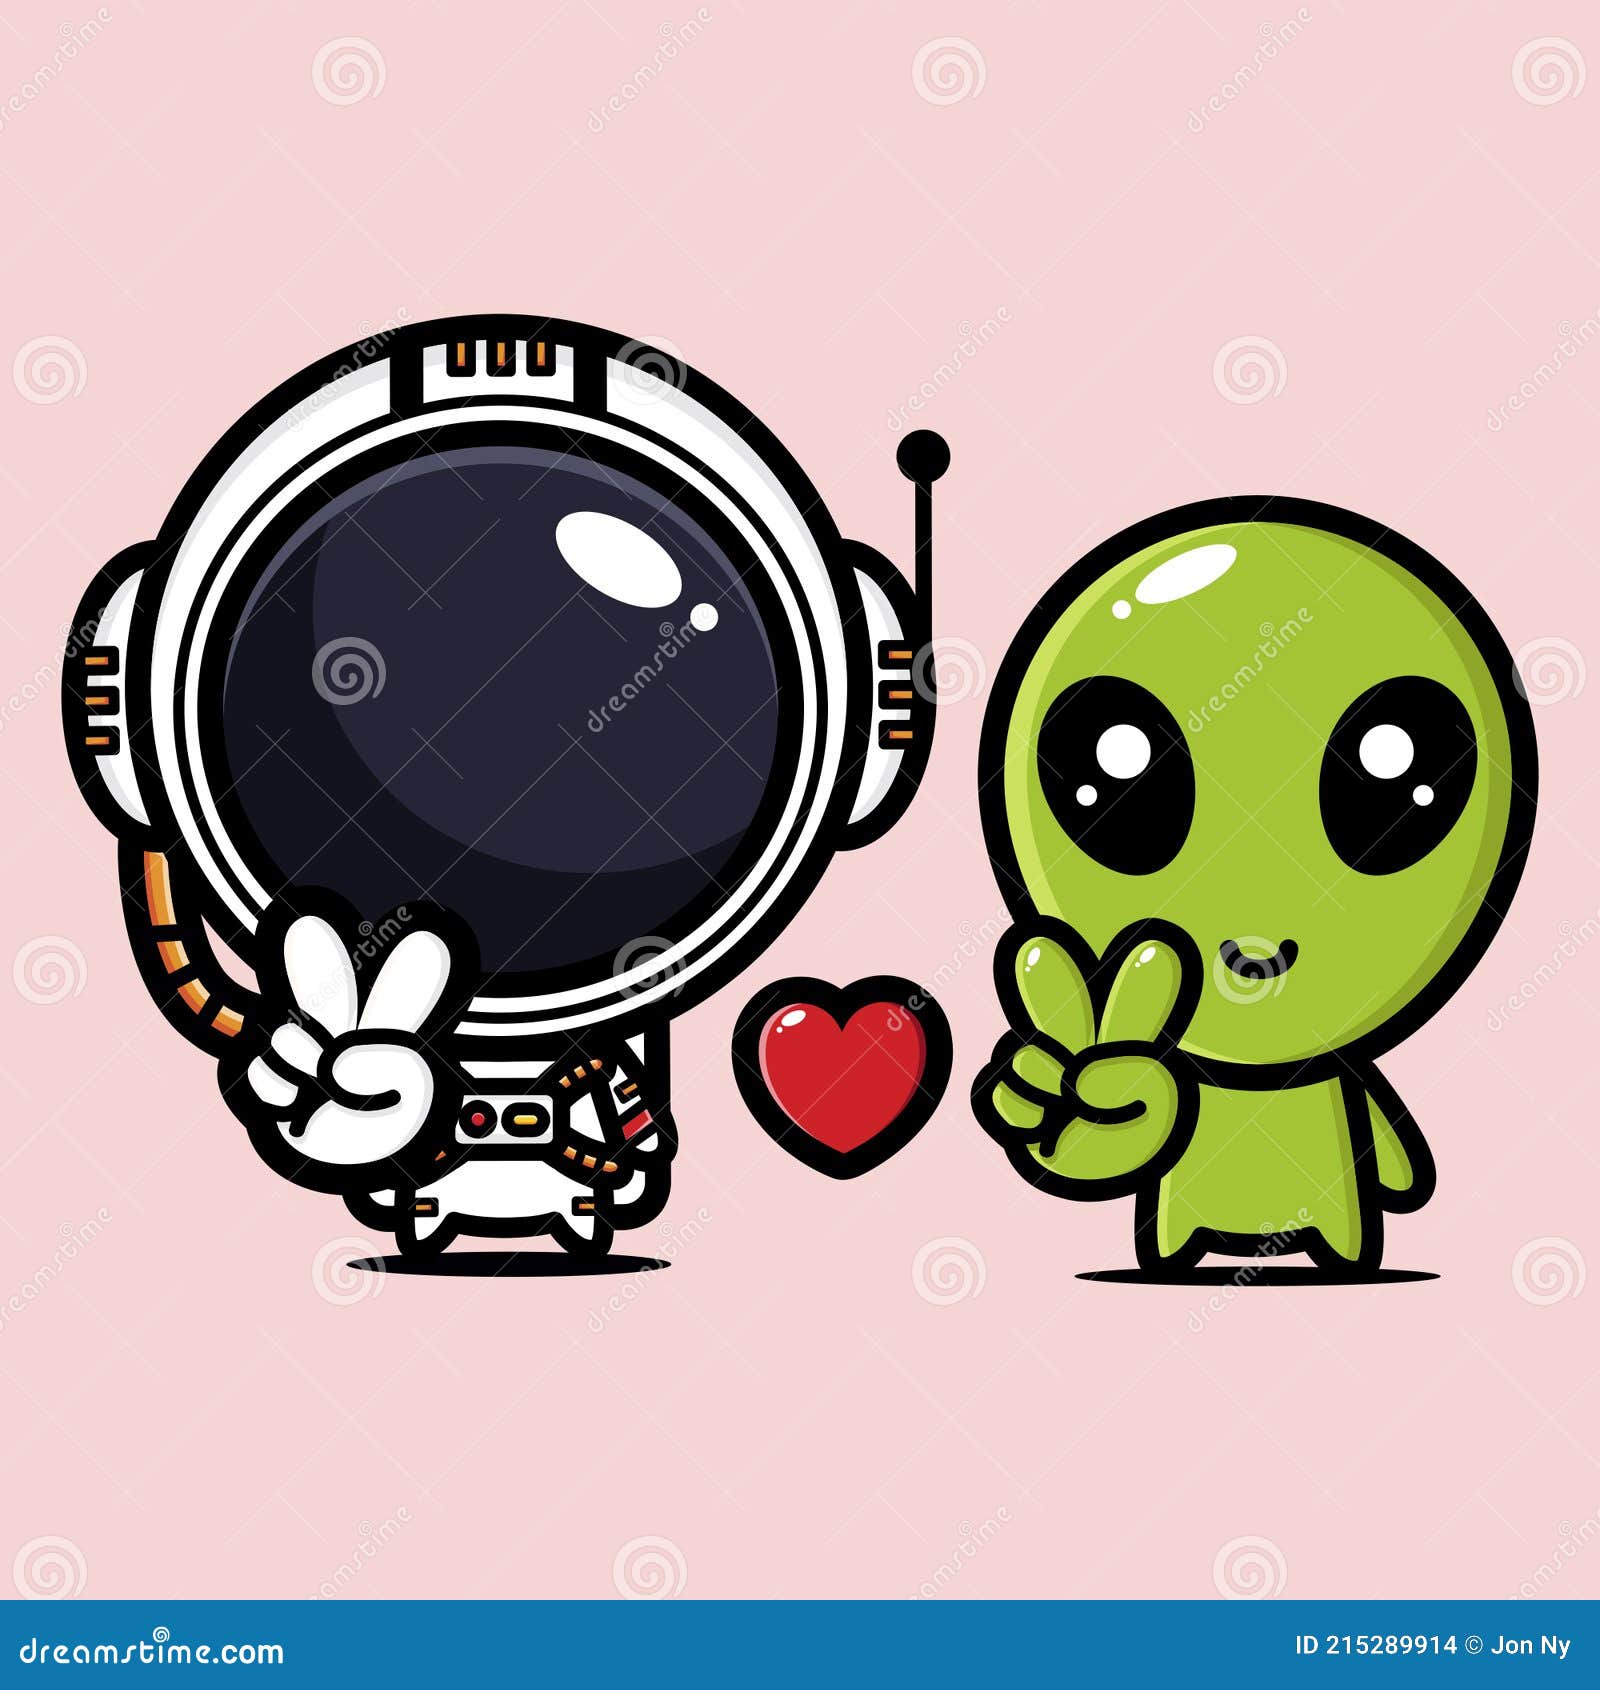 Um desenho animado de dois alienígenas sentados em uma nave